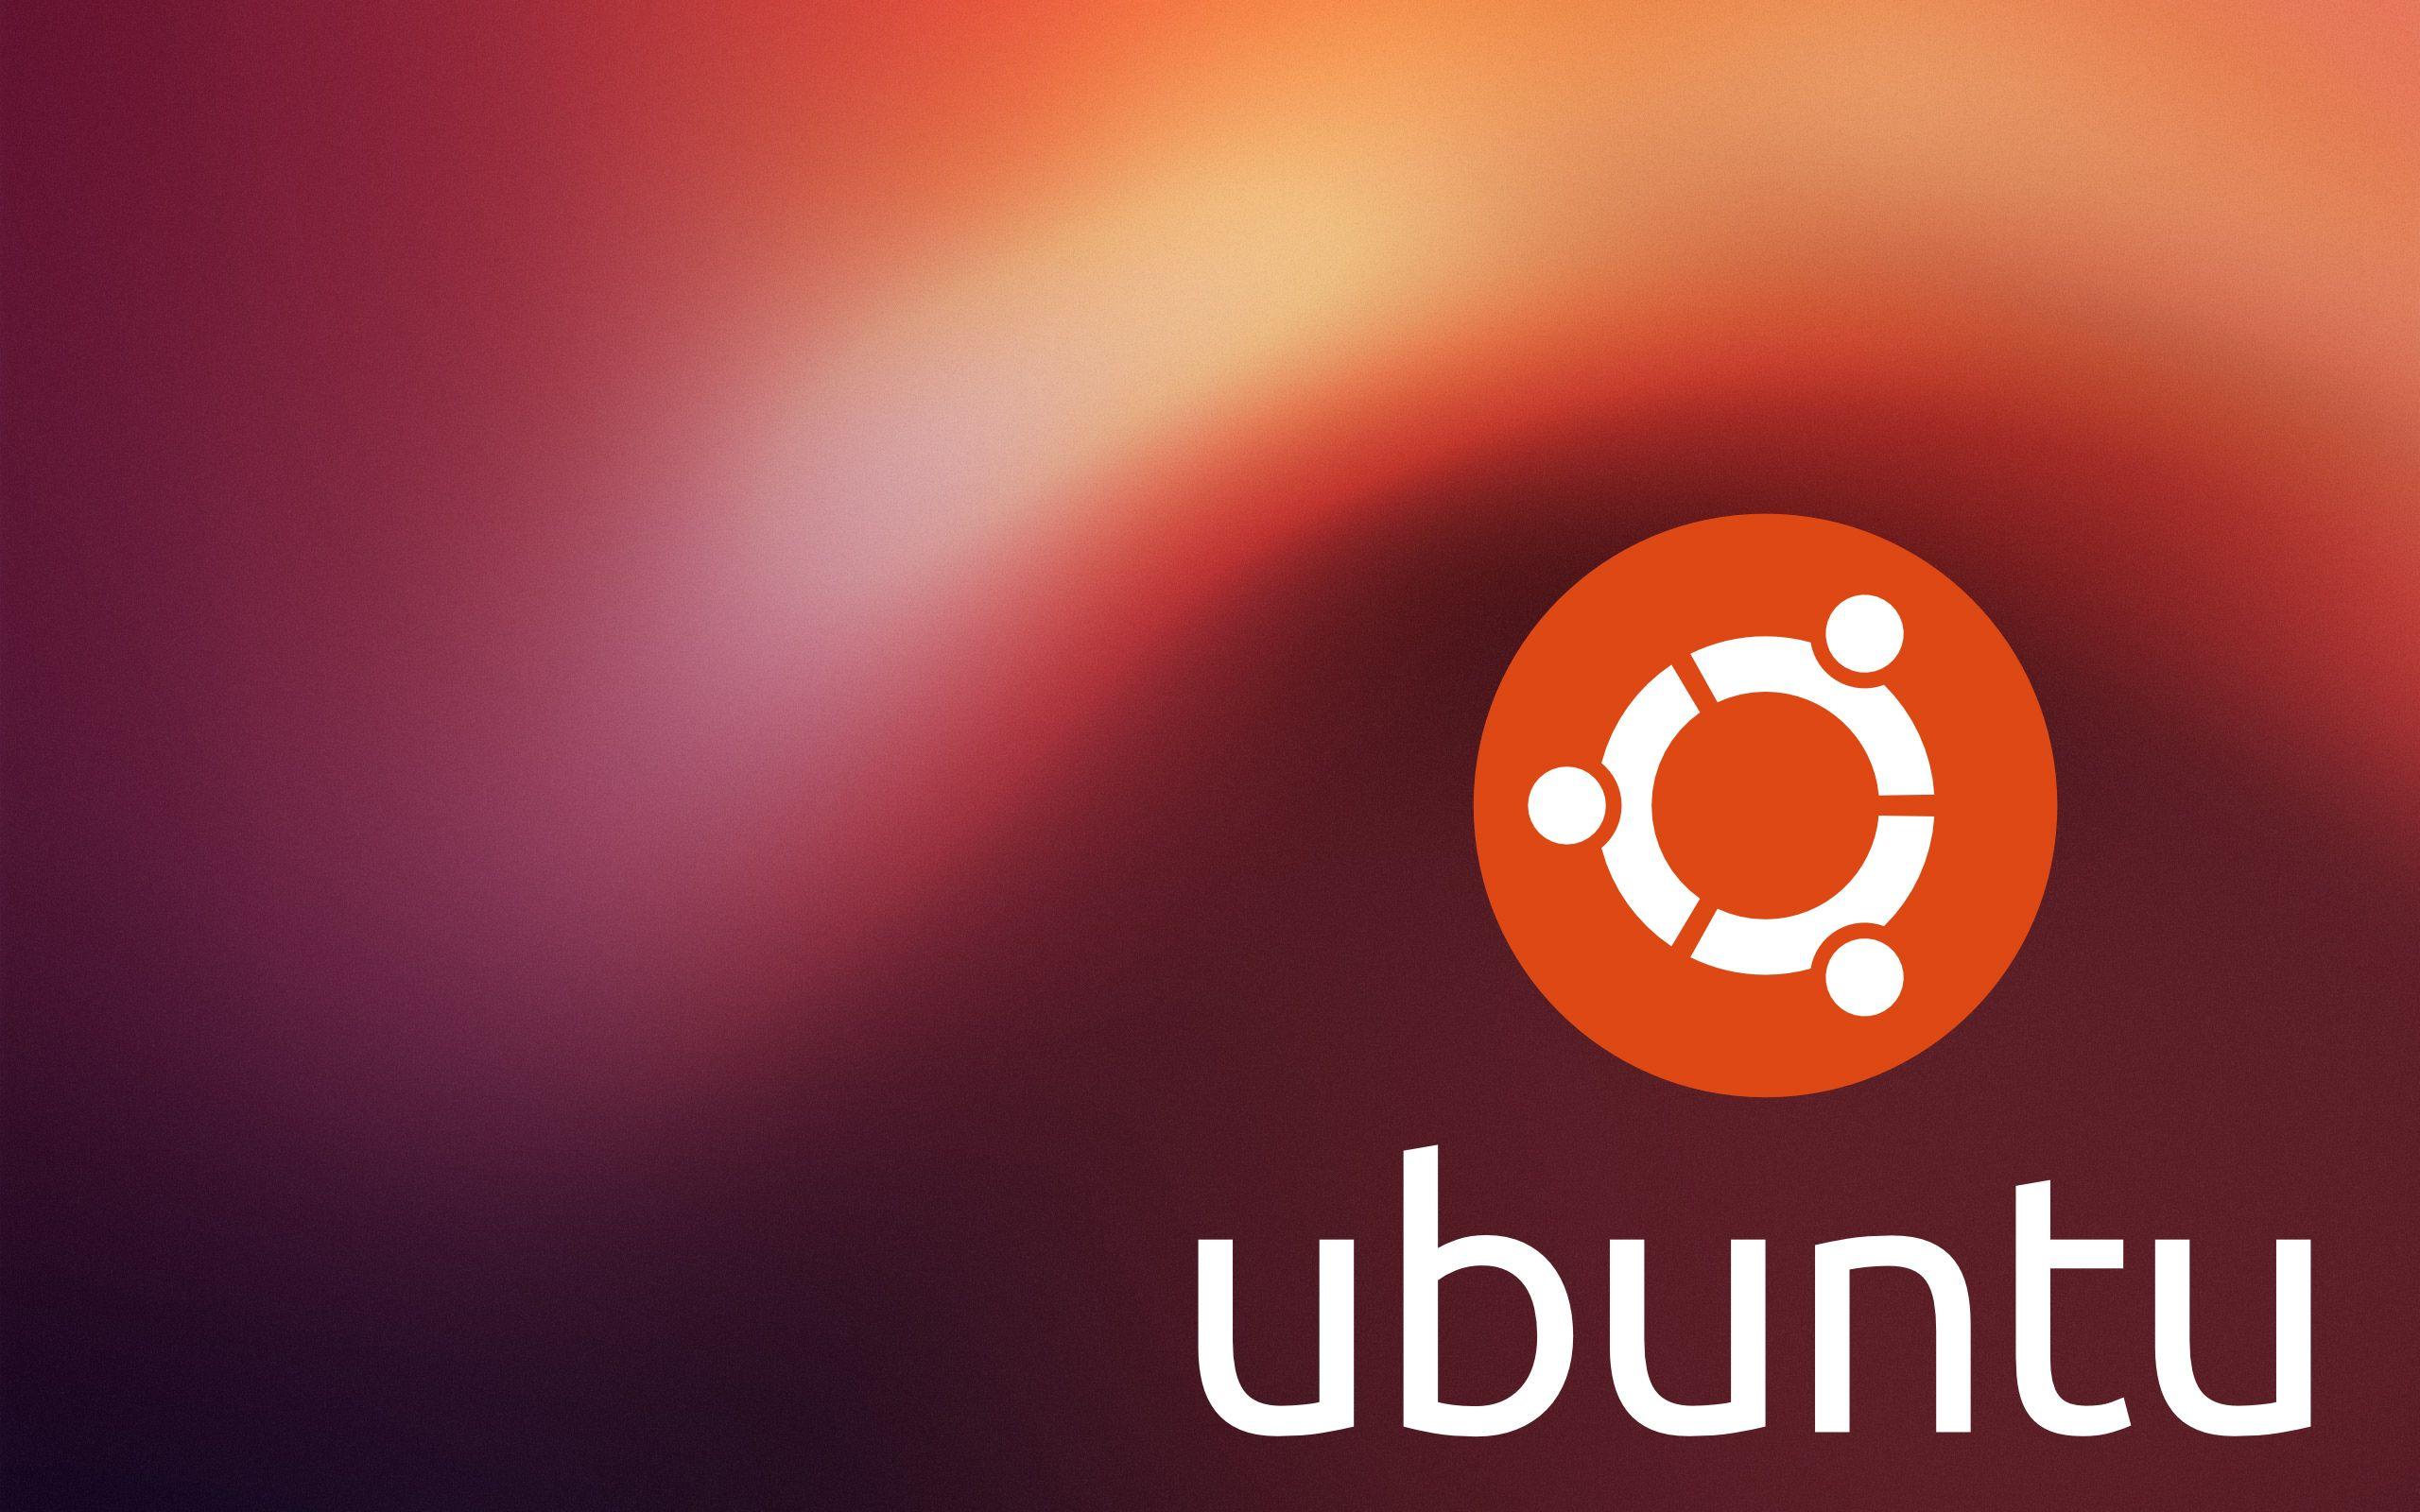 Ubuntu Background Quality Ubuntu Background Image For Your PC